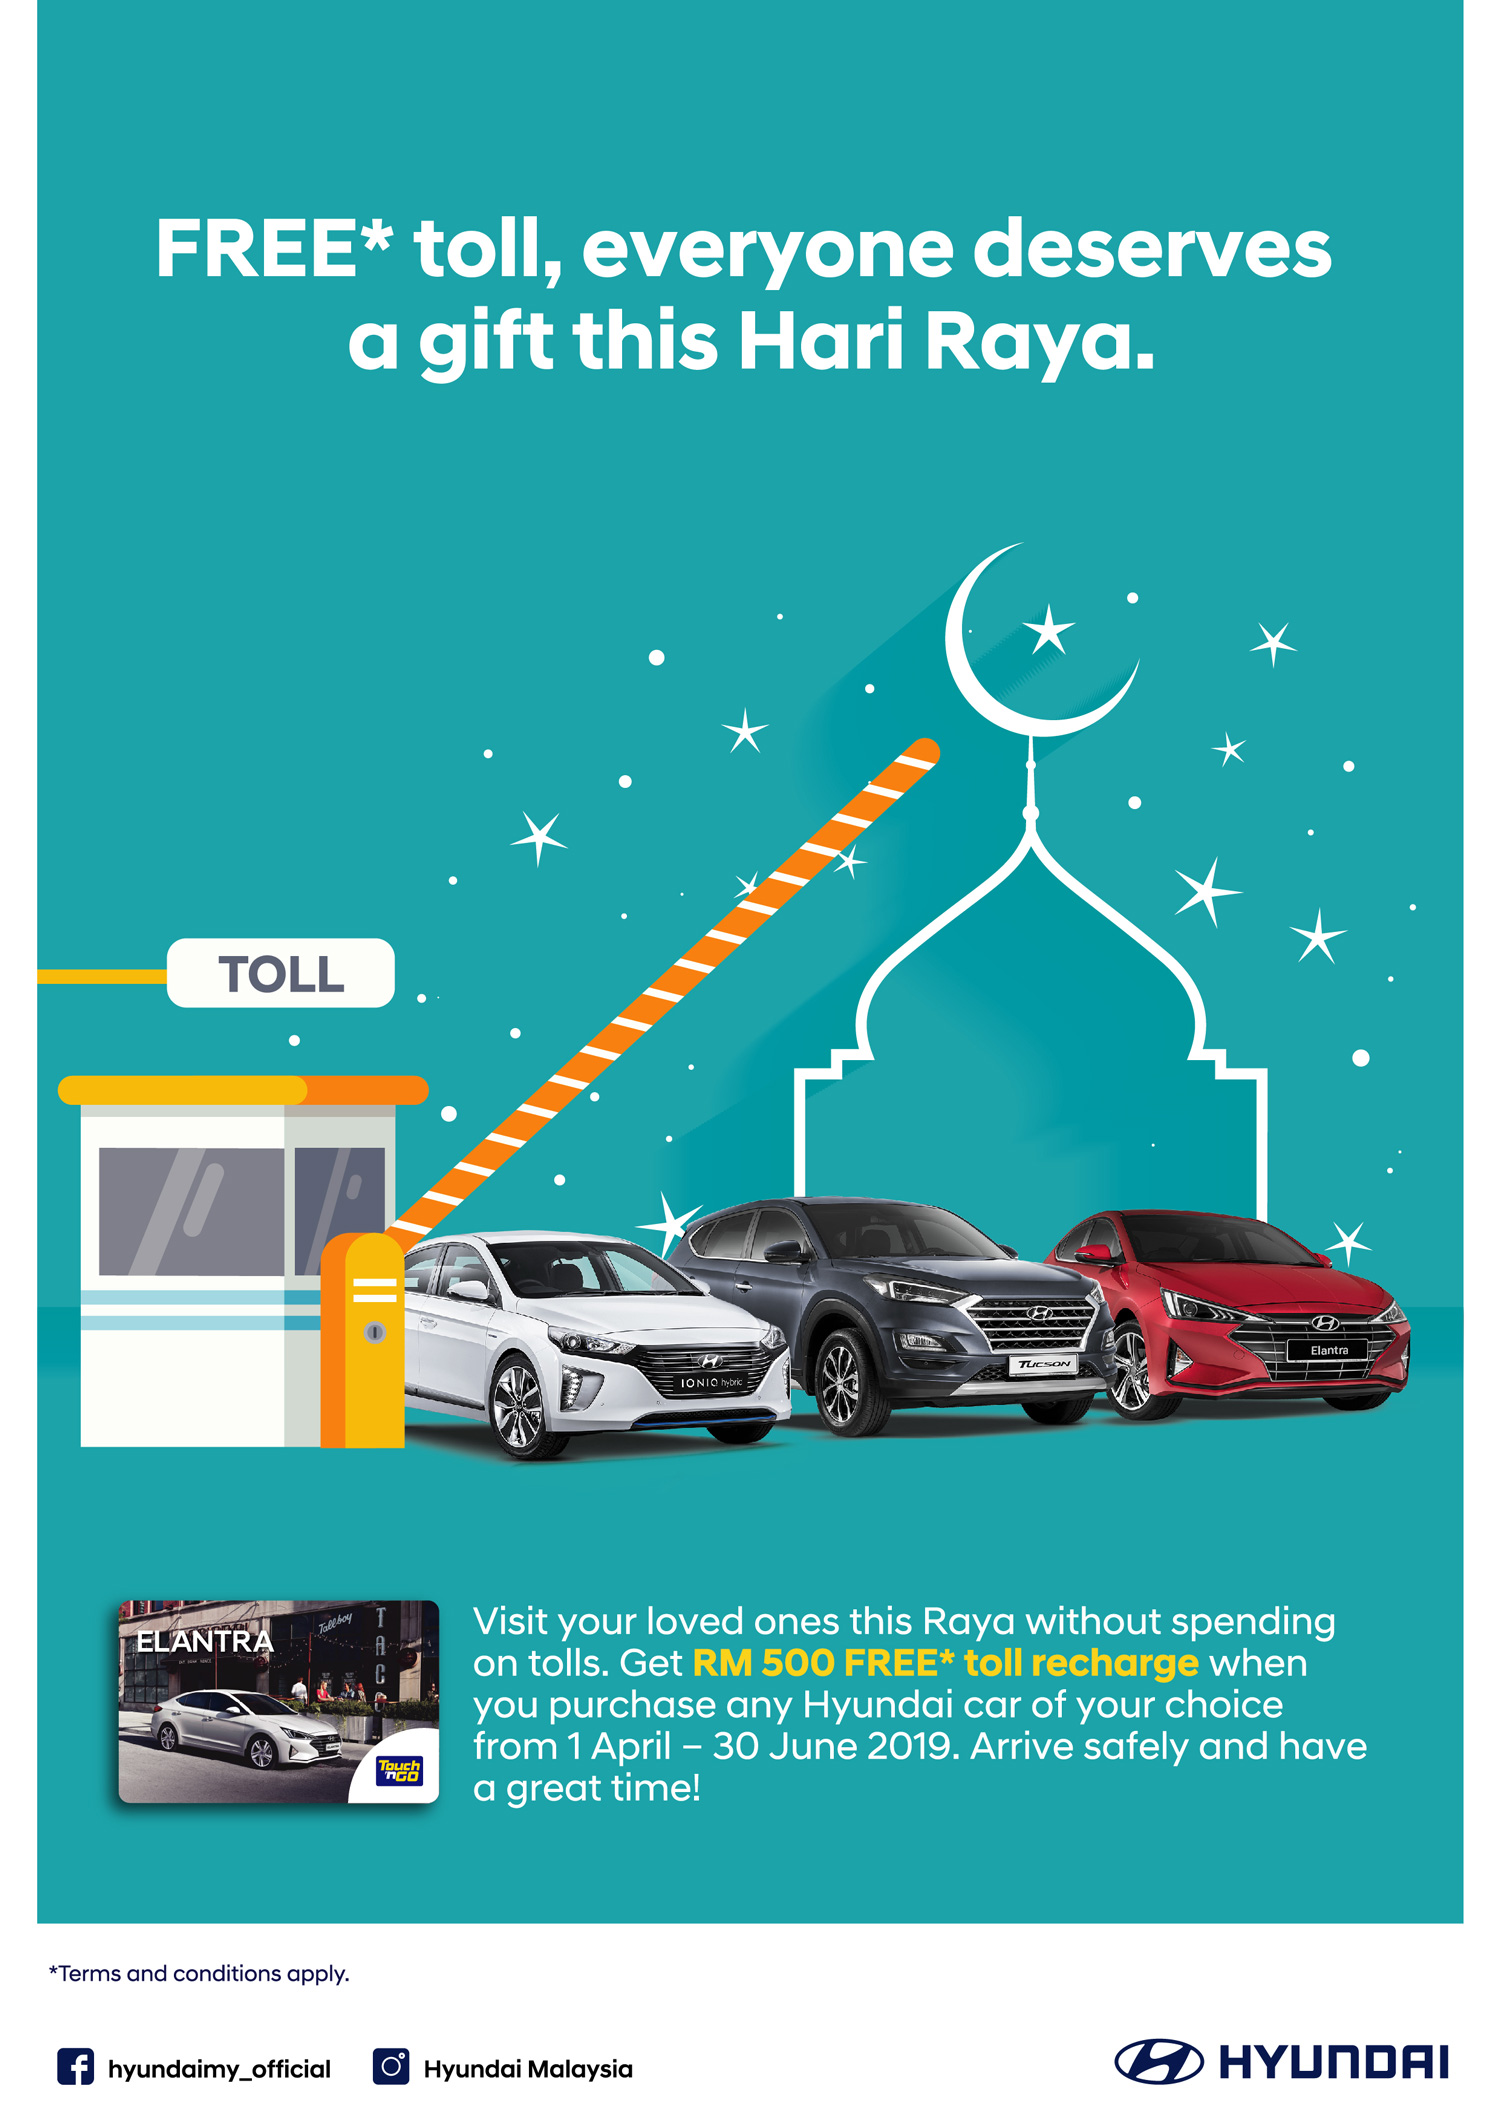 FREE* toll, everyone deserves a gift this Hari Raya.